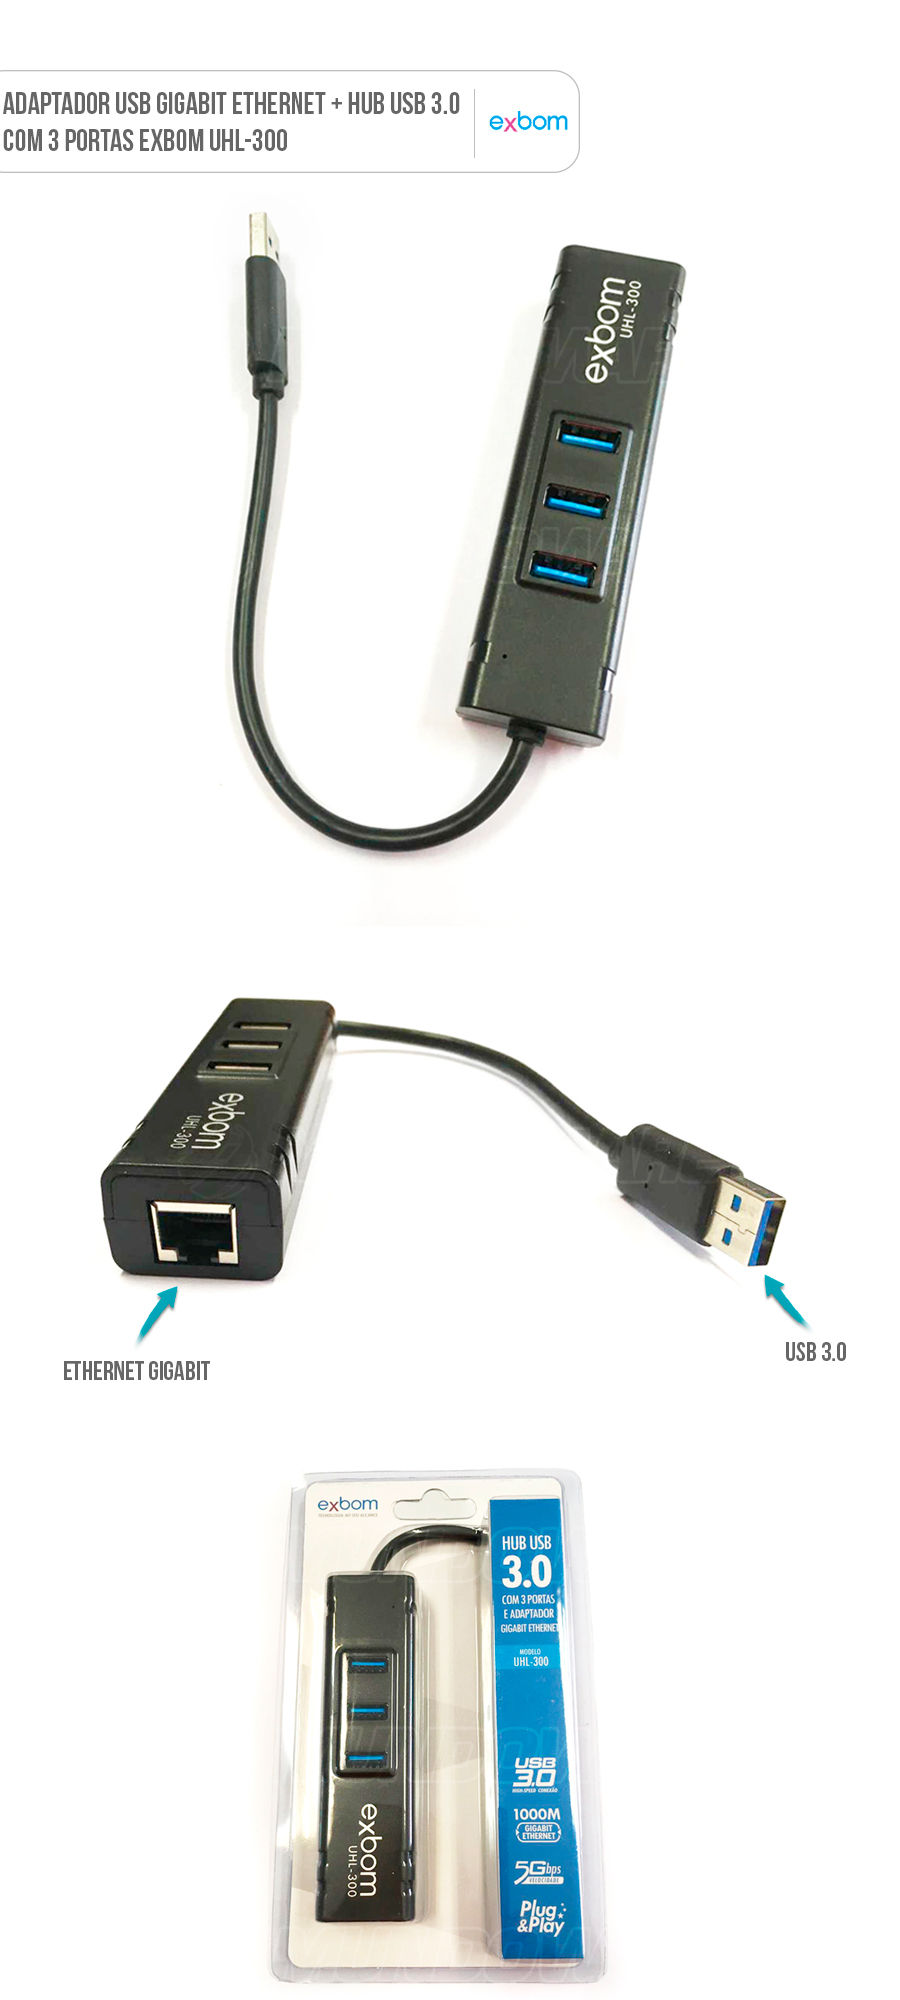 Adaptador USB Gigabit Ethernet e Hub USB 3.0 com 3 Portas